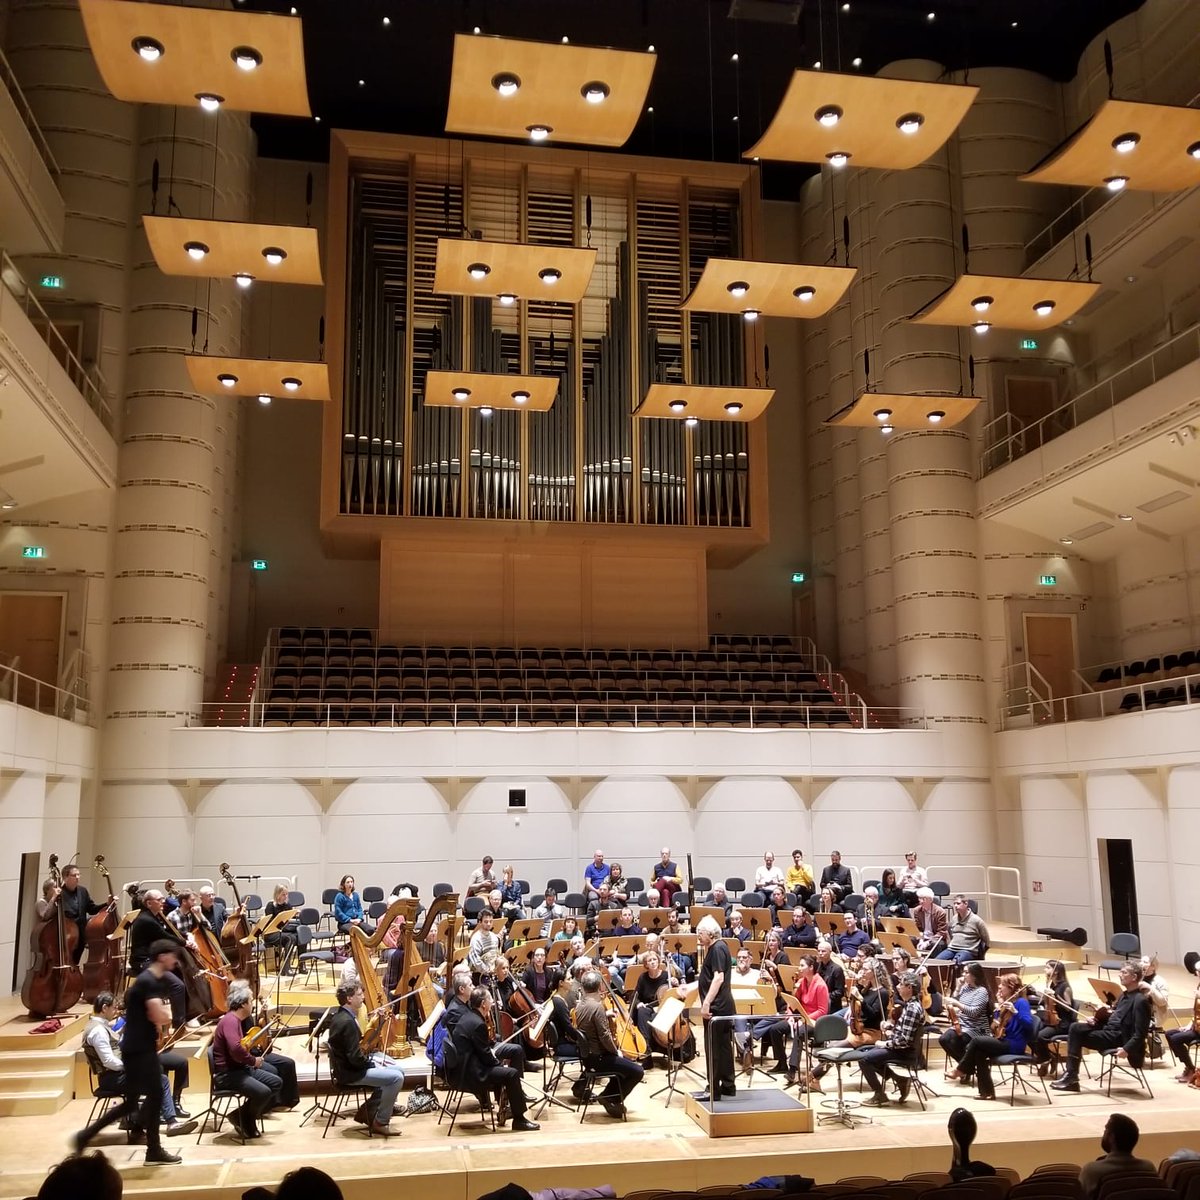 En place pour la dernière répétition du dernier concert de cette belle tournée Deutsches Requiem avec mes amis du #CollegiumVocaleGent et l'@OrchestCElysees ! Ce soir à Dortmund @Konzerthaus_DO ! Salle magnifique !!